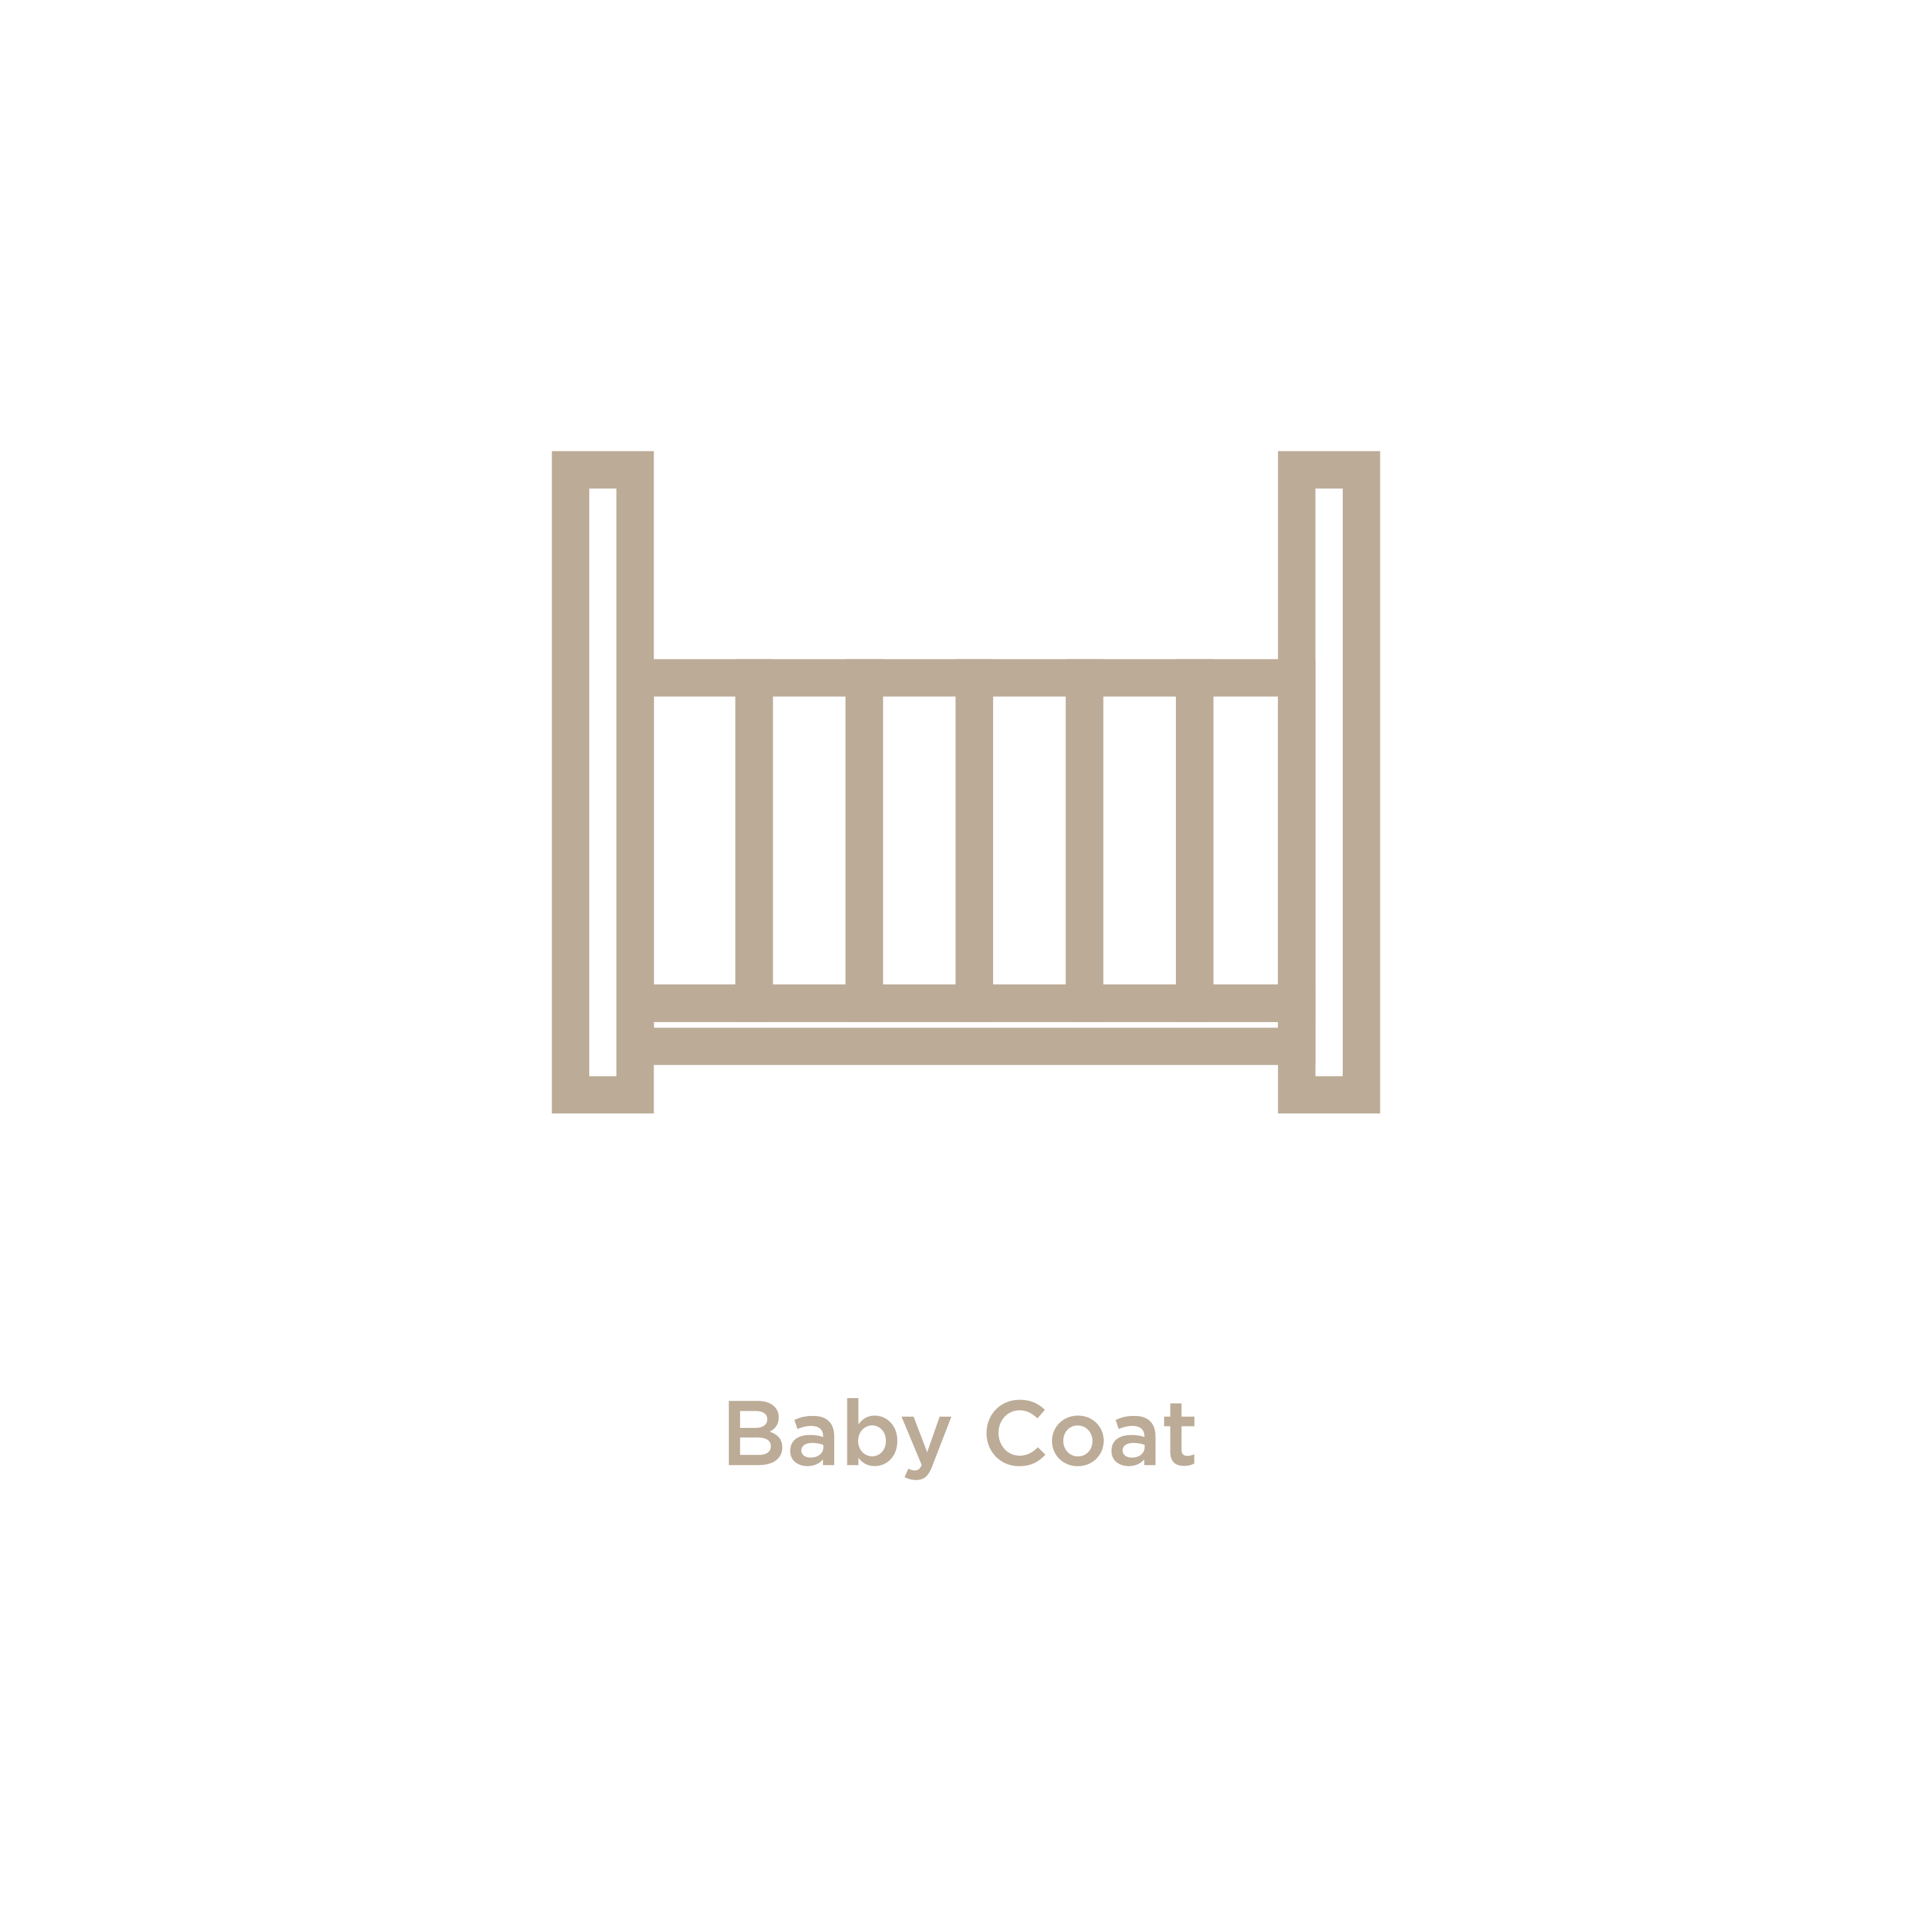 Baby Coat